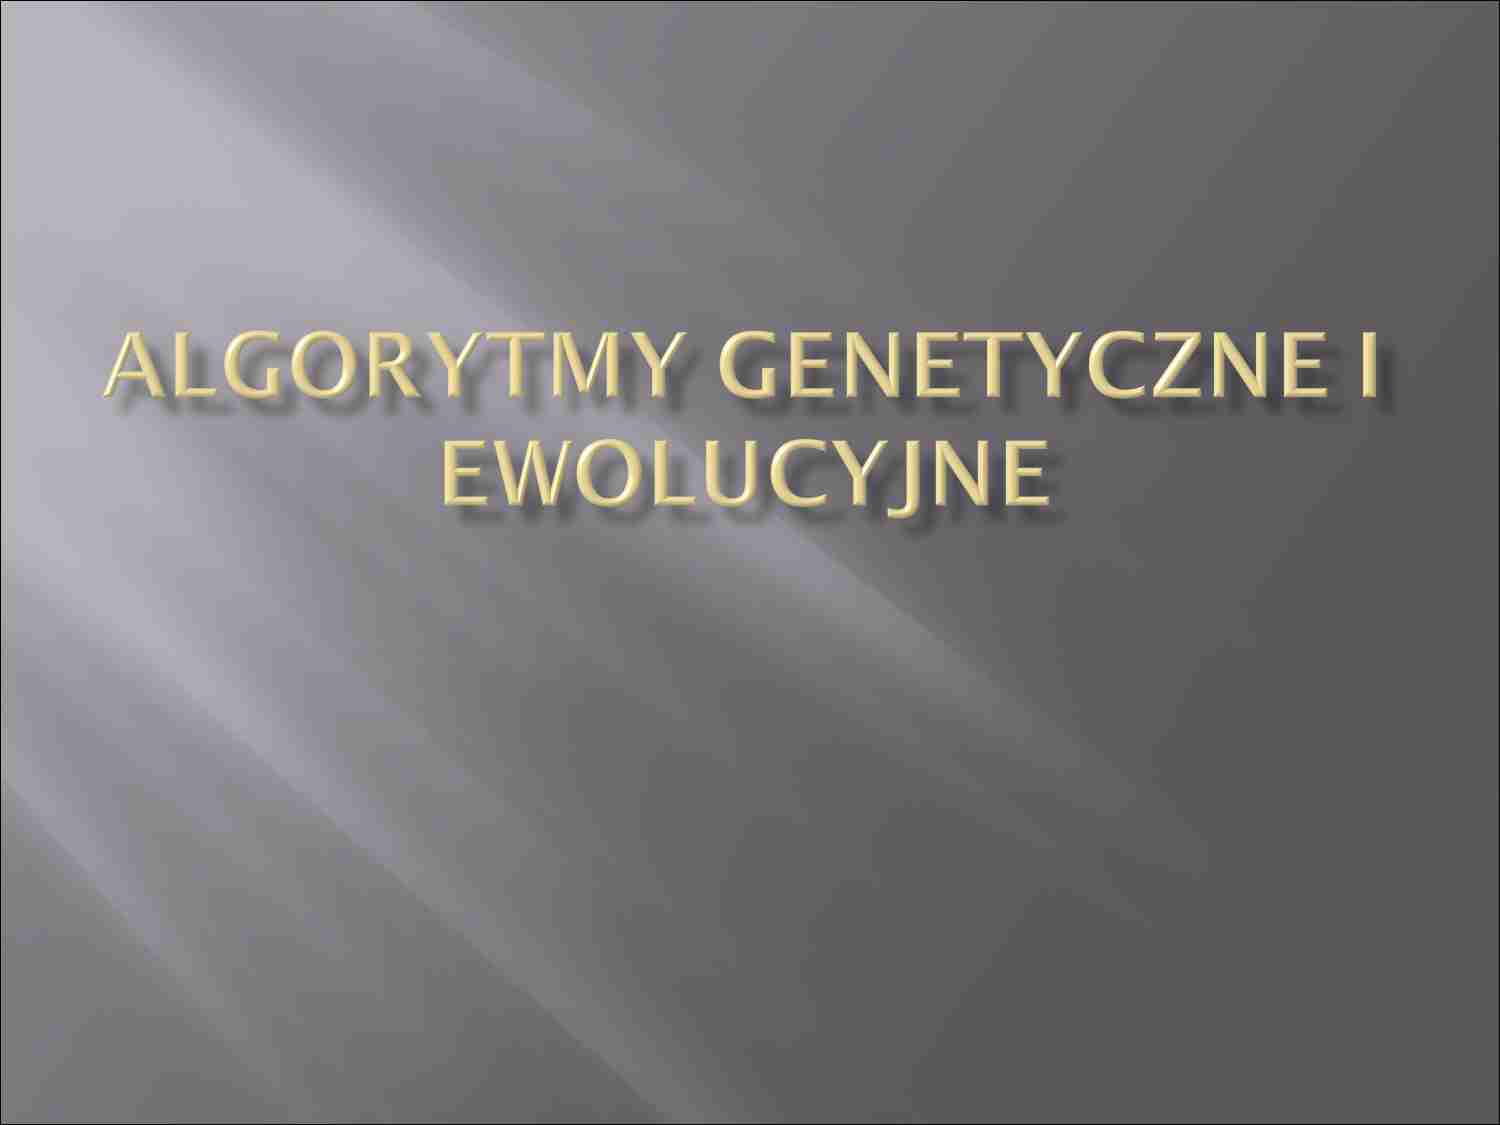 Algorytmy genetyczne - ewolucjonizm - strona 1